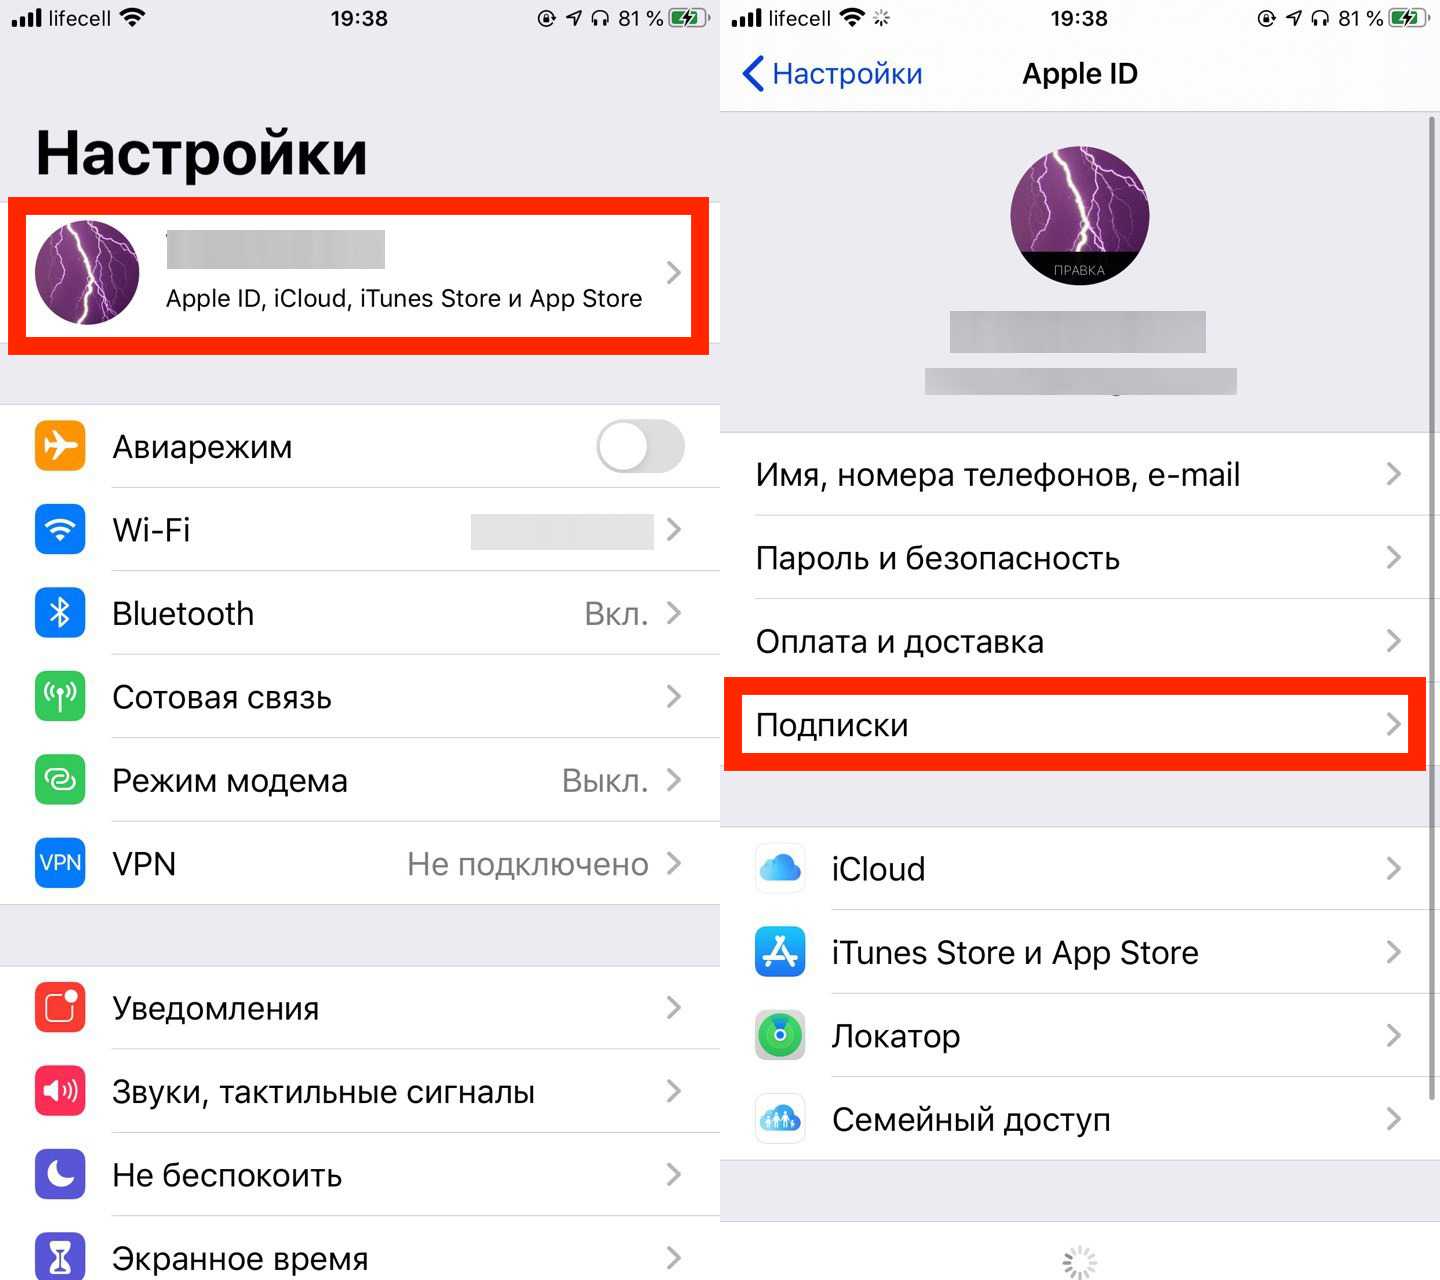 Возобновить подписку на iCloud в России, особенно если платишь со счёта Apple ID, может быть не так-то просто Рассказываем, что может пойти не так и как себя вести, если iOS просто не позволяет оплатить доступ к облаку